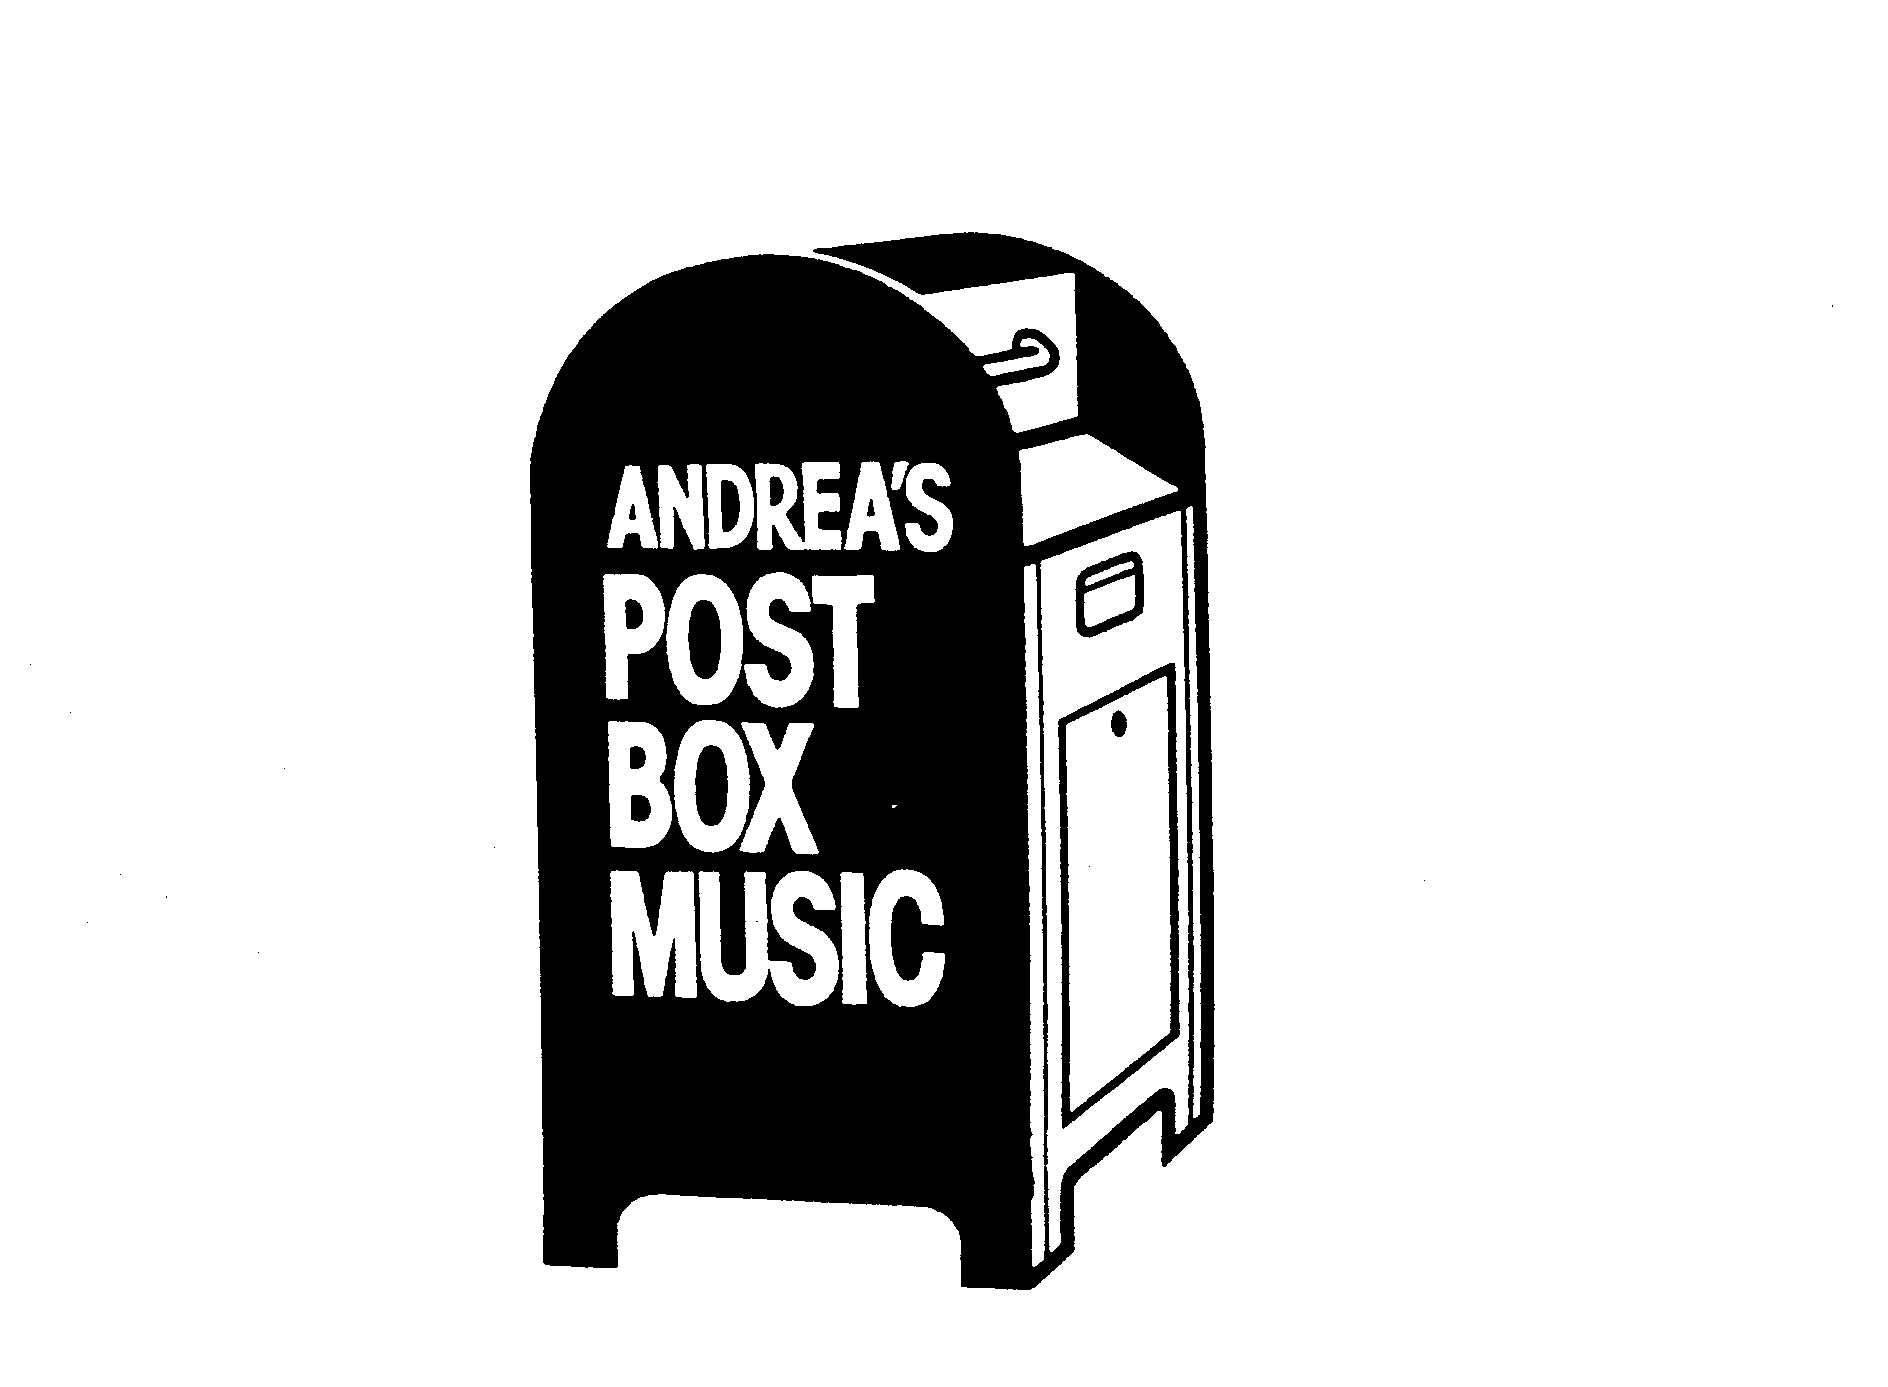  ANDREA'S POST BOX MUSIC